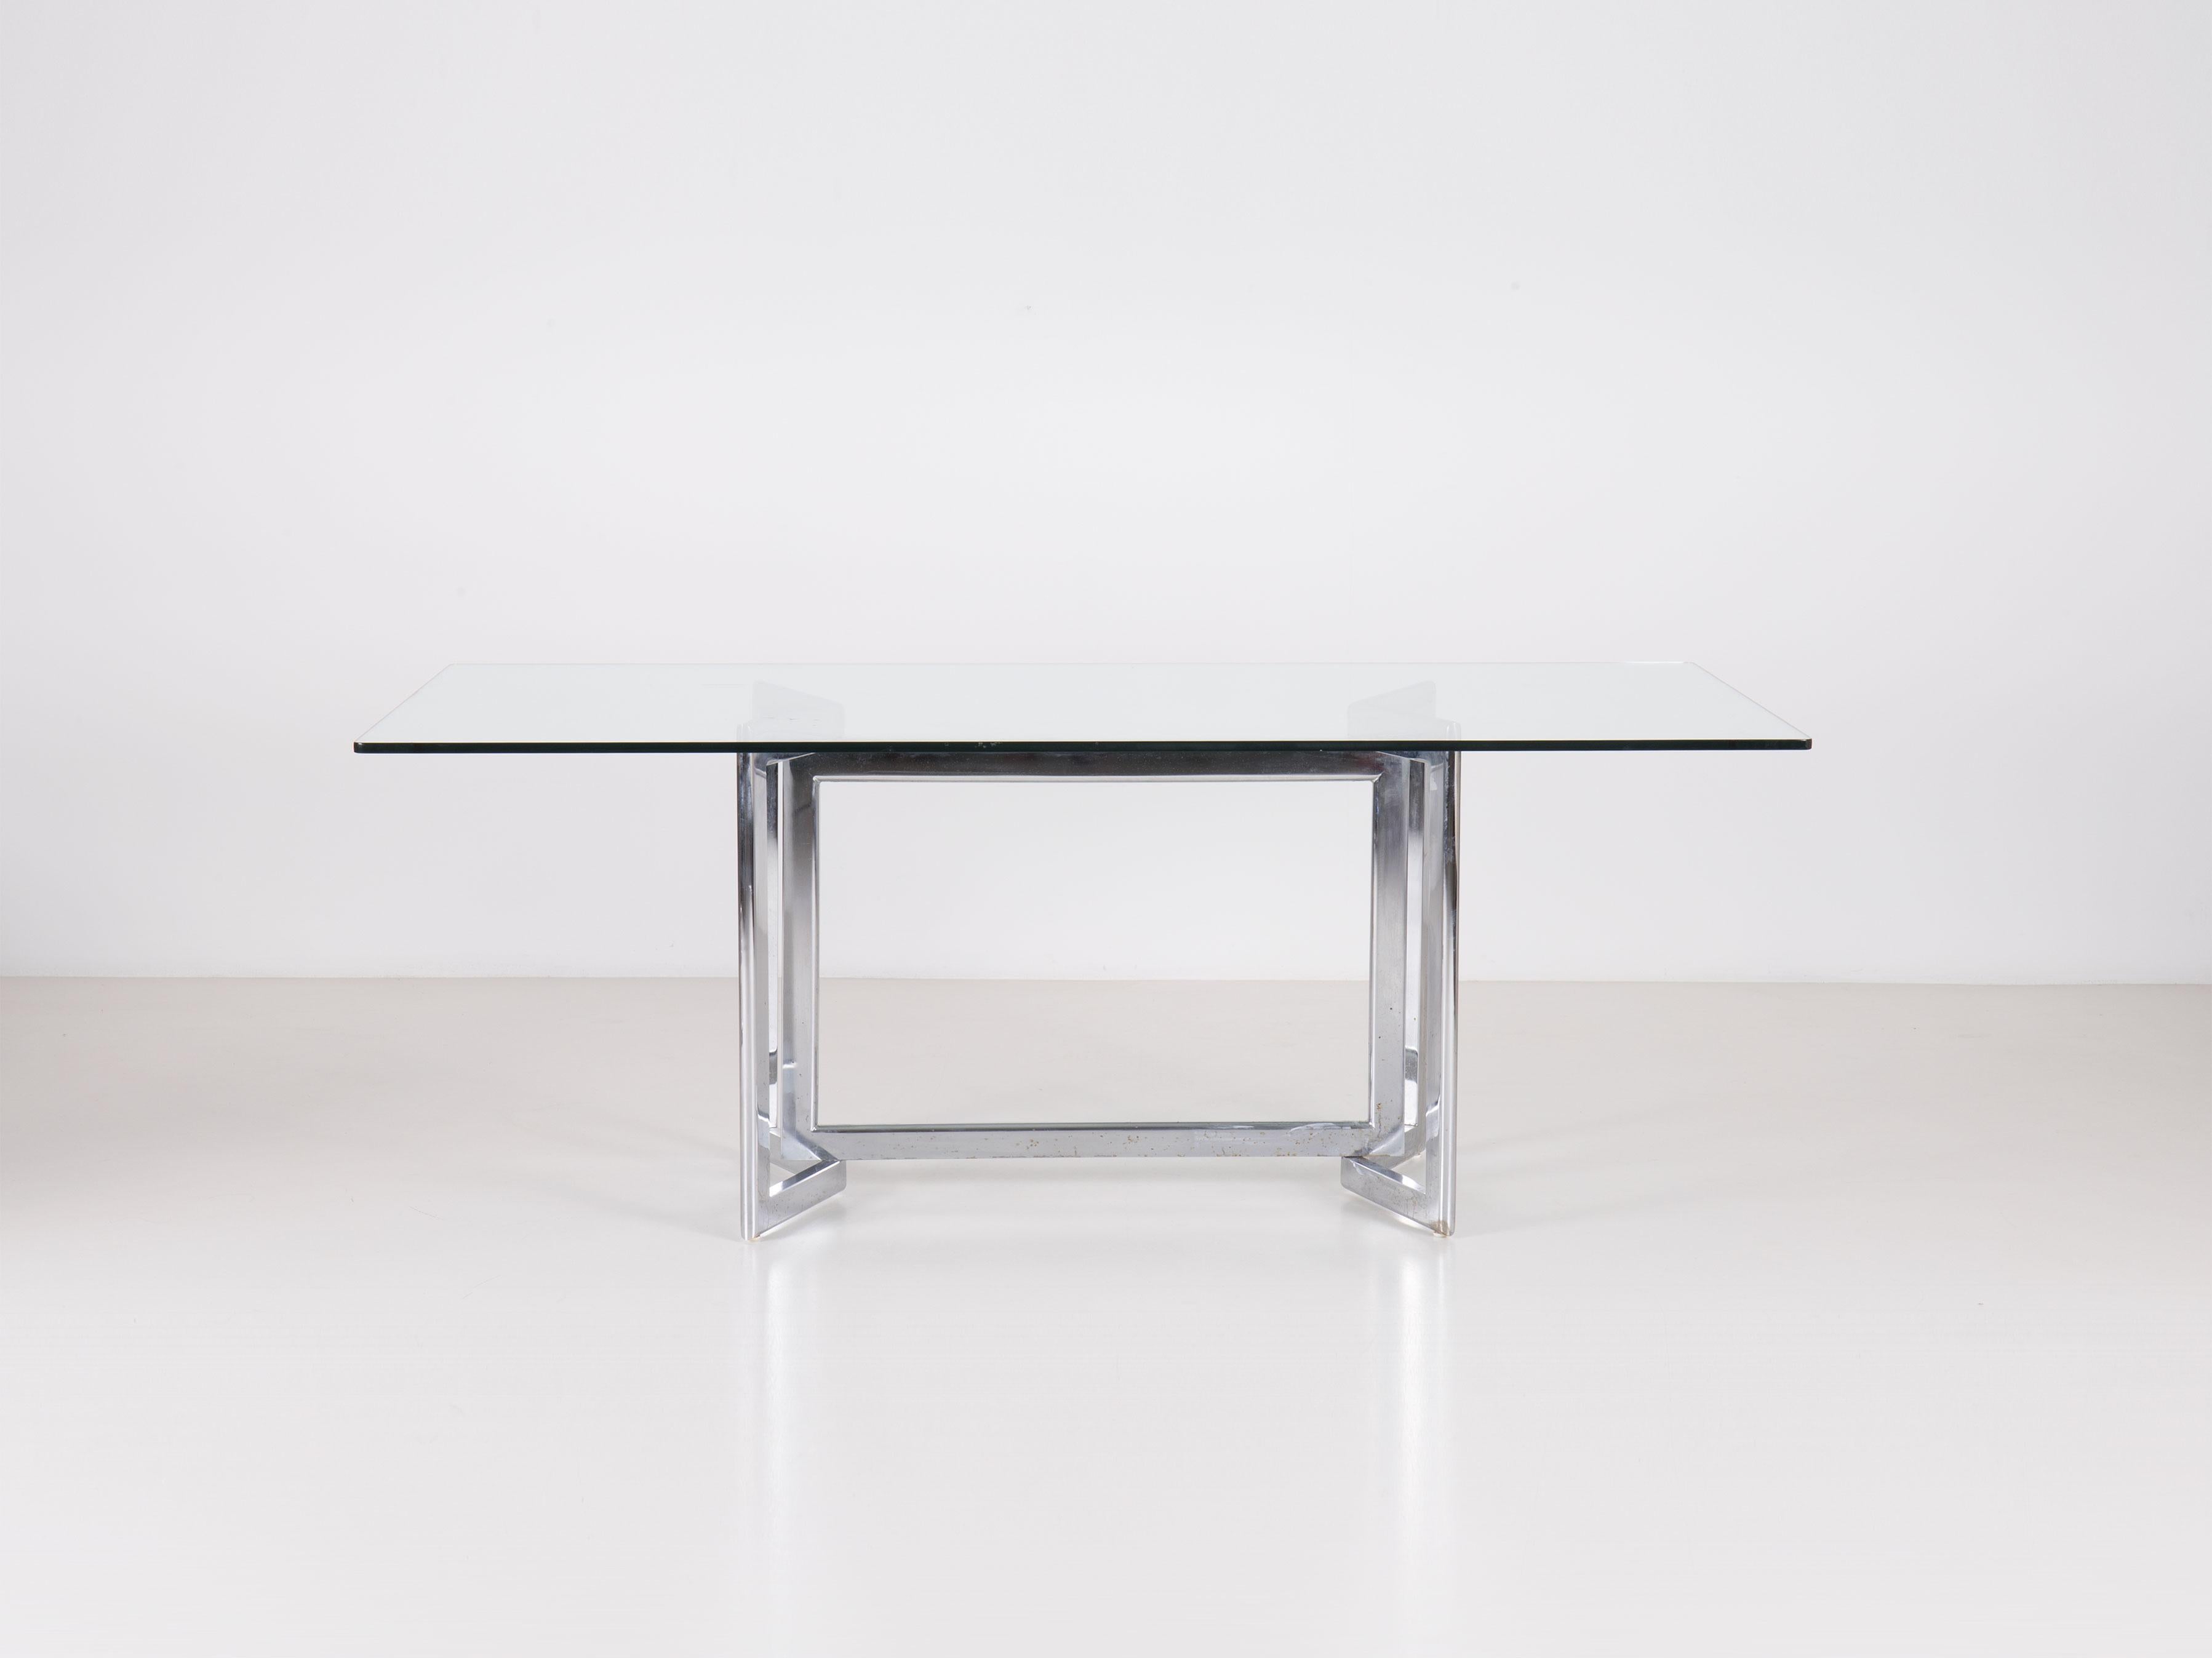 La table Davide a été conçue par Studio Simon et produite par Simon. 
Structure en acier chromé partiellement pliable, plateau en verre transparent.

Bibliographie :
Fondazione Scientifica Querini Stampalia, 